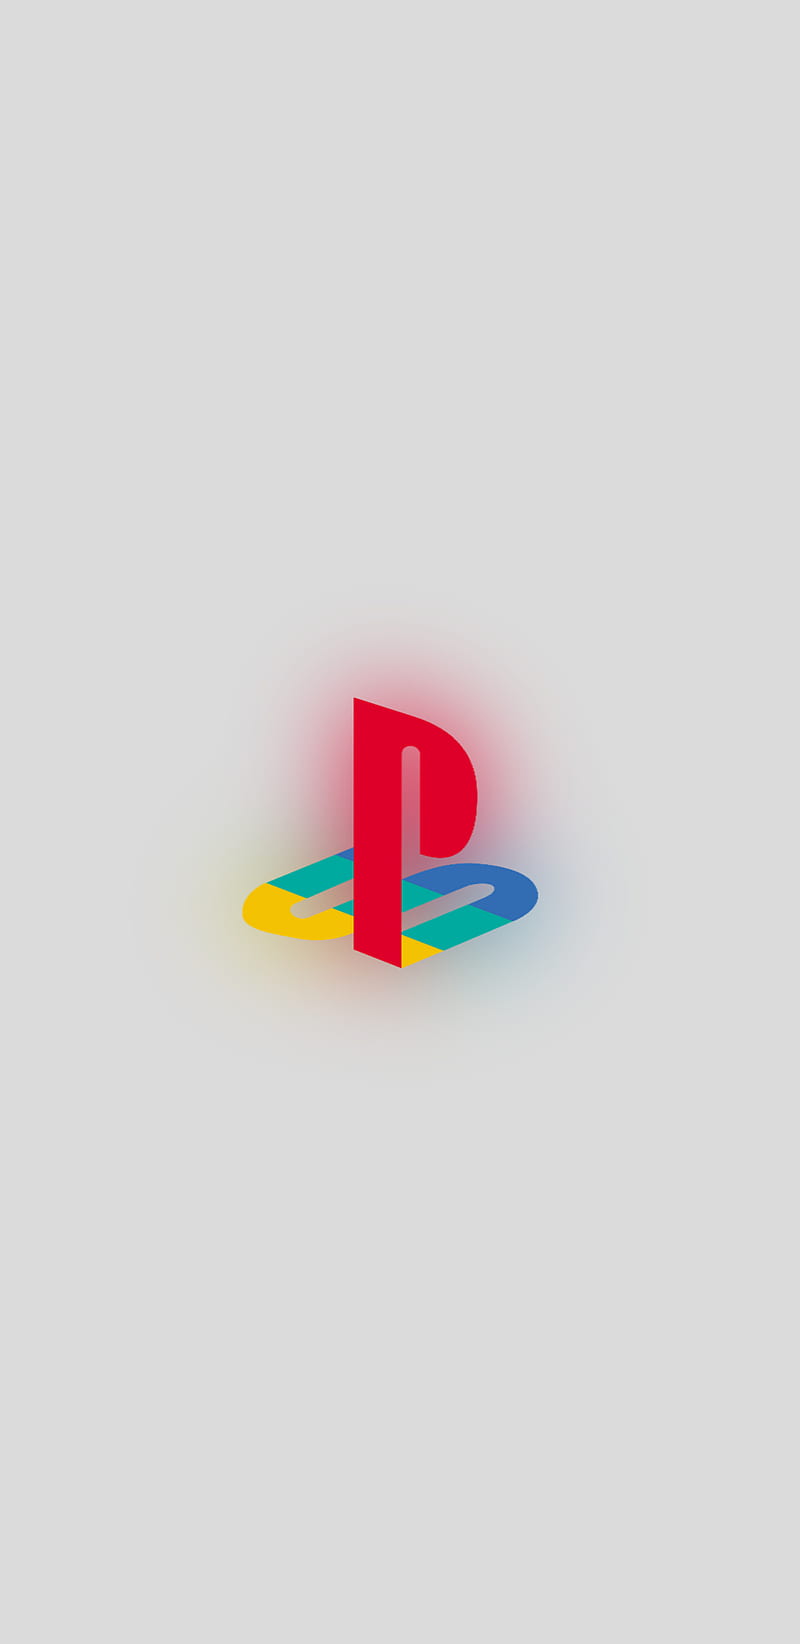 playstation 3 logo wallpaper